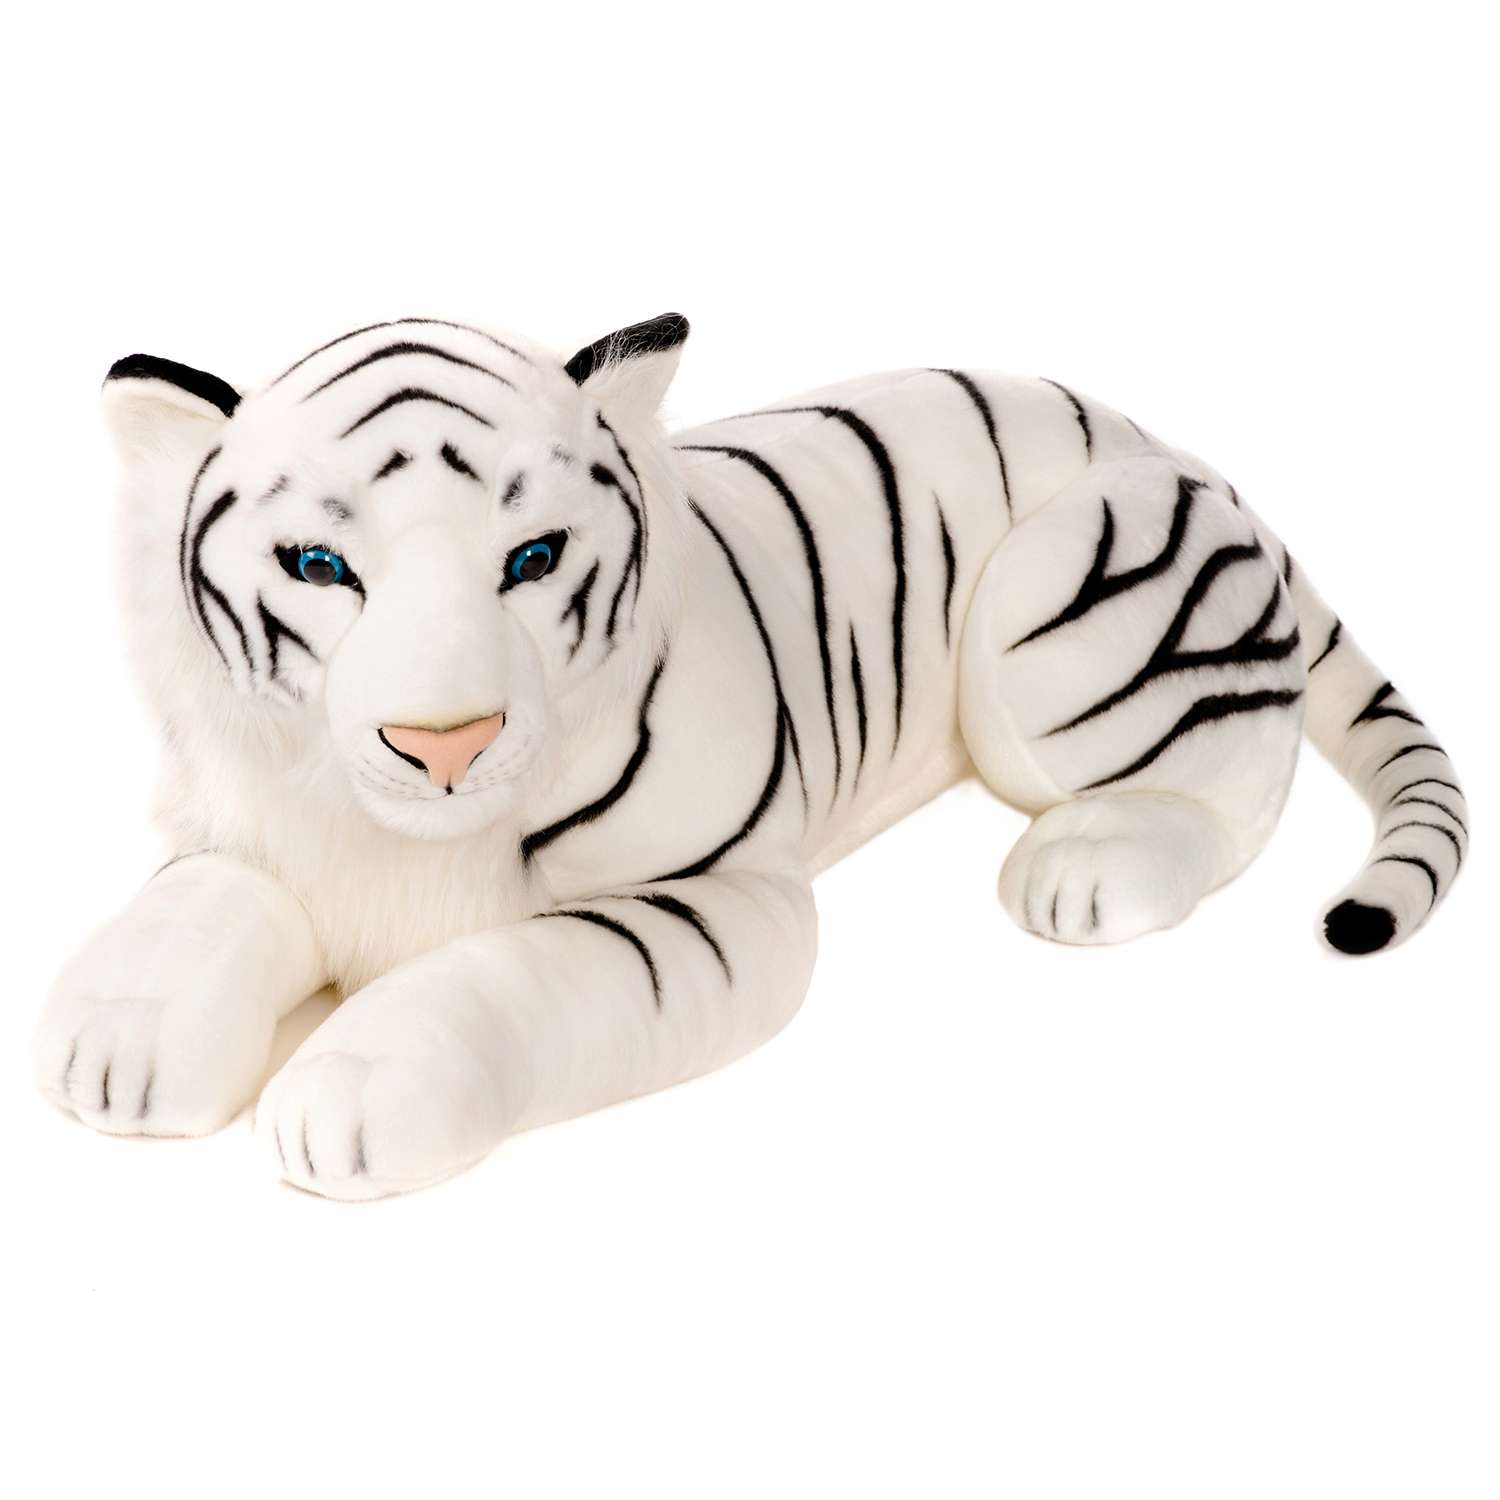 Текстильная игрушка тигр Сэм